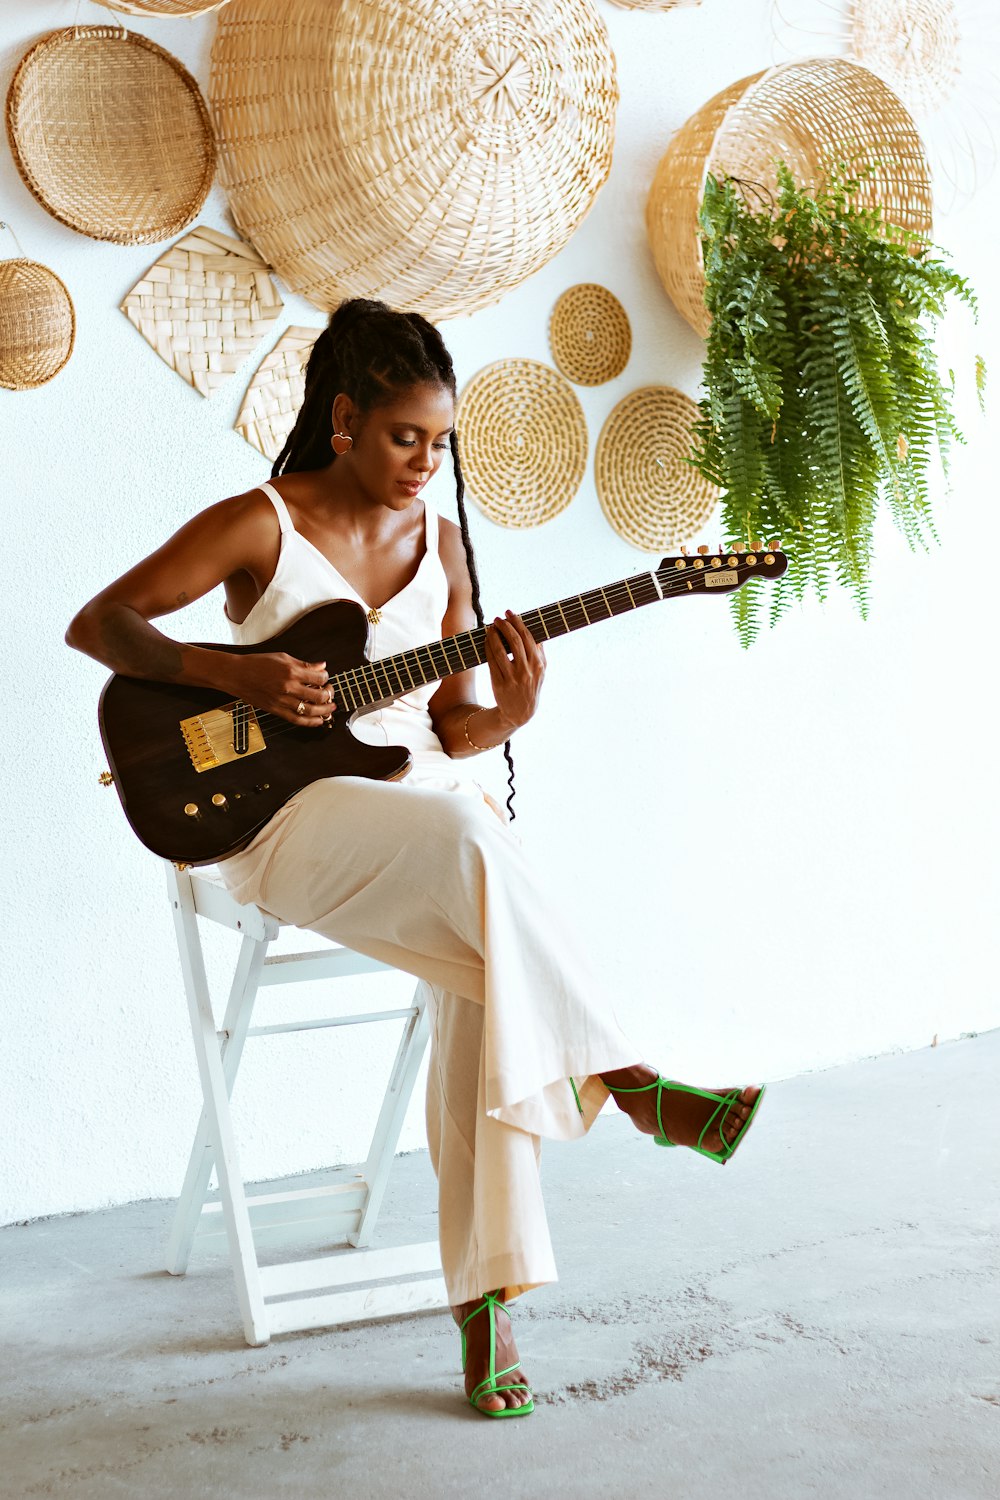 Una donna seduta su una sedia che suona una chitarra foto – Chitarra  Immagine gratuita su Unsplash